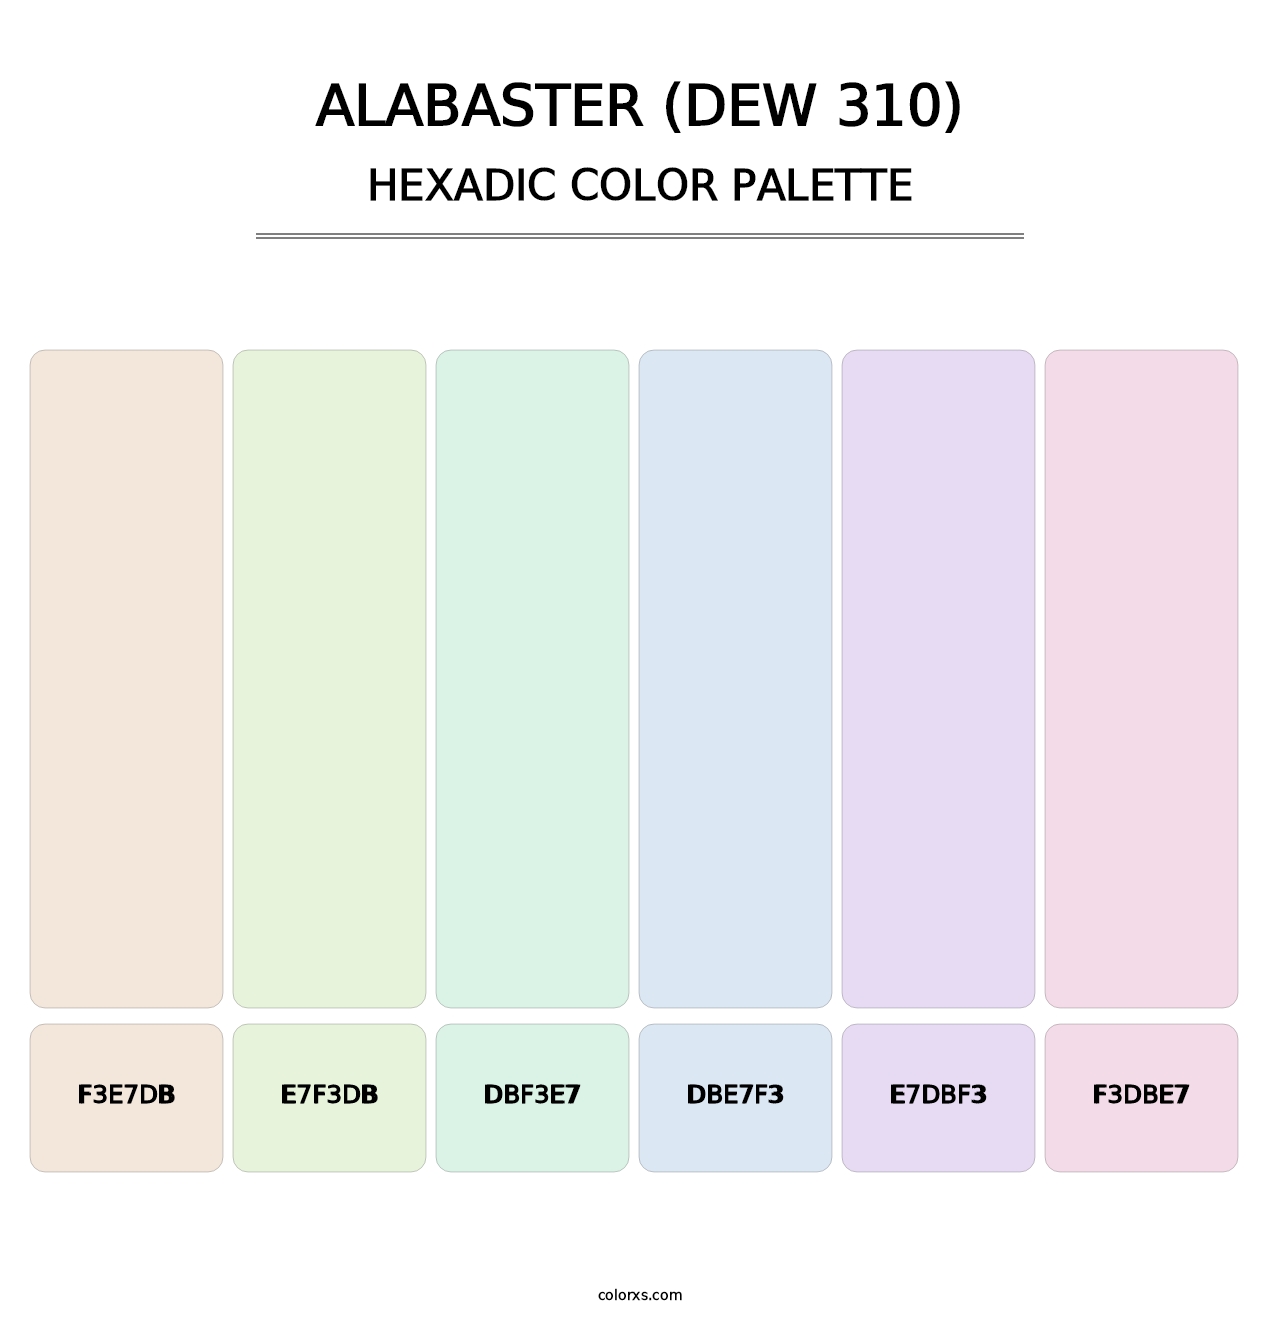 Alabaster (DEW 310) - Hexadic Color Palette